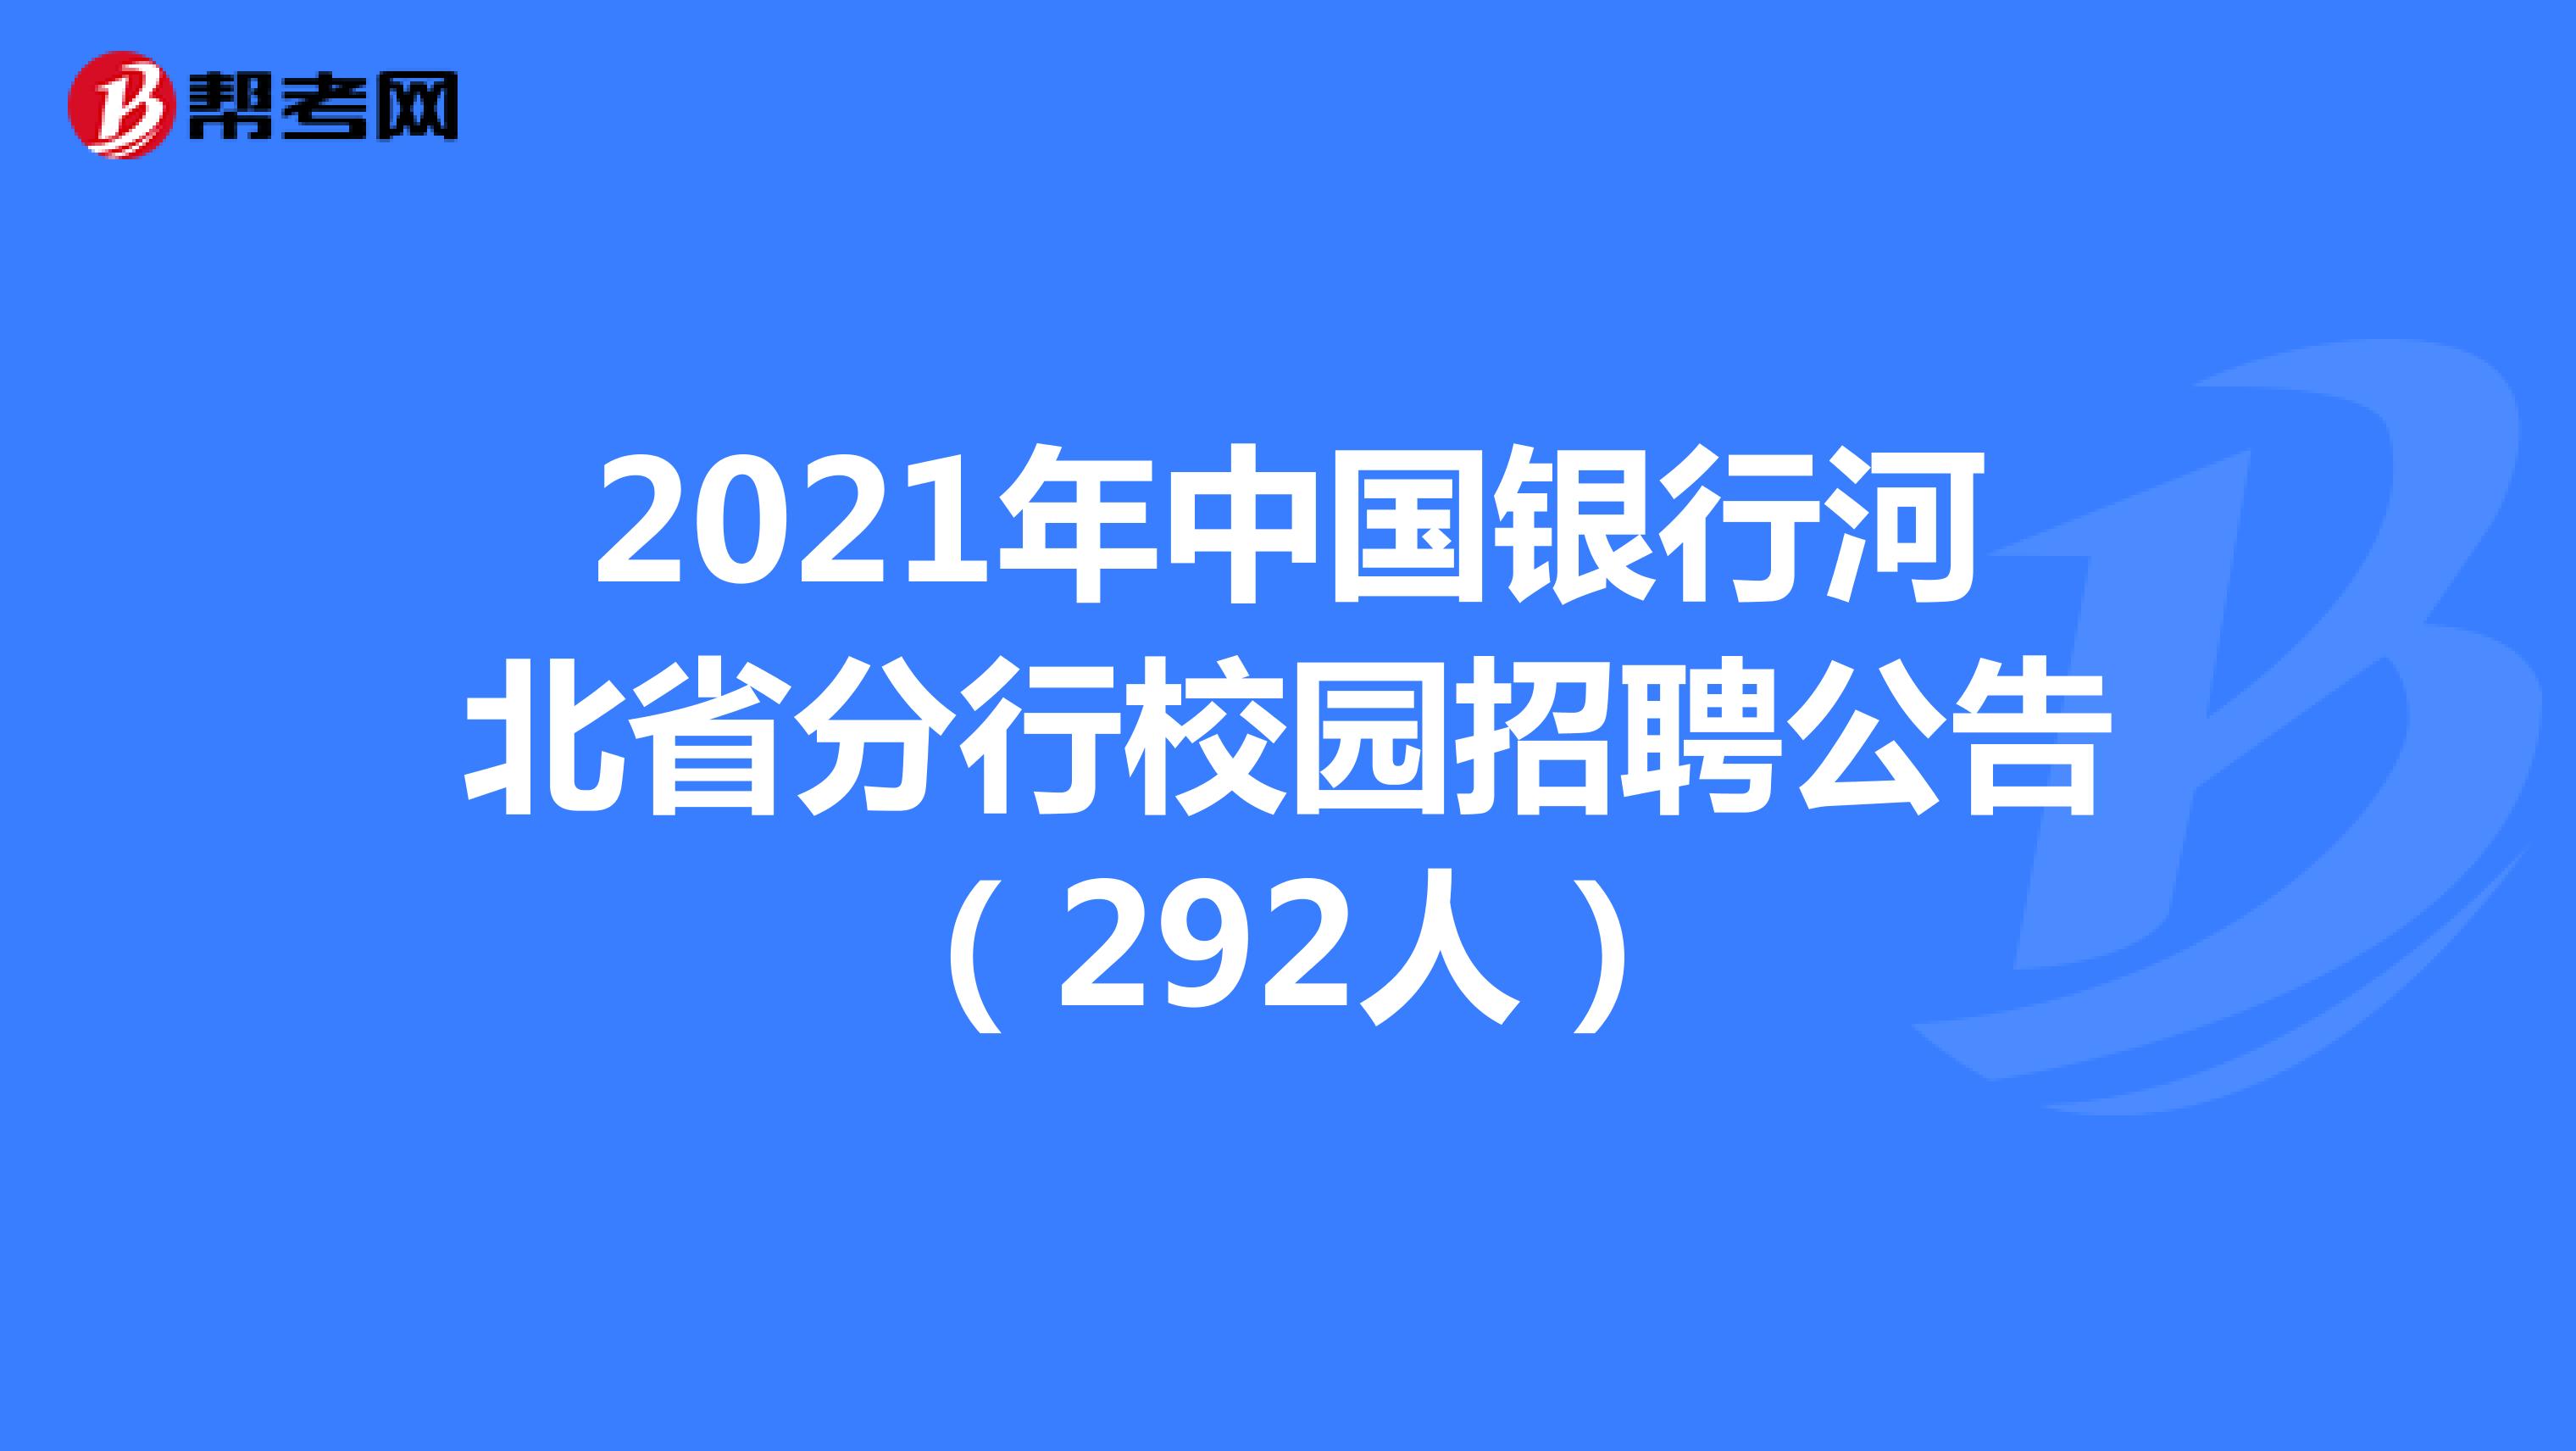 2021年中国银行河北省分行校园招聘公告（292人）